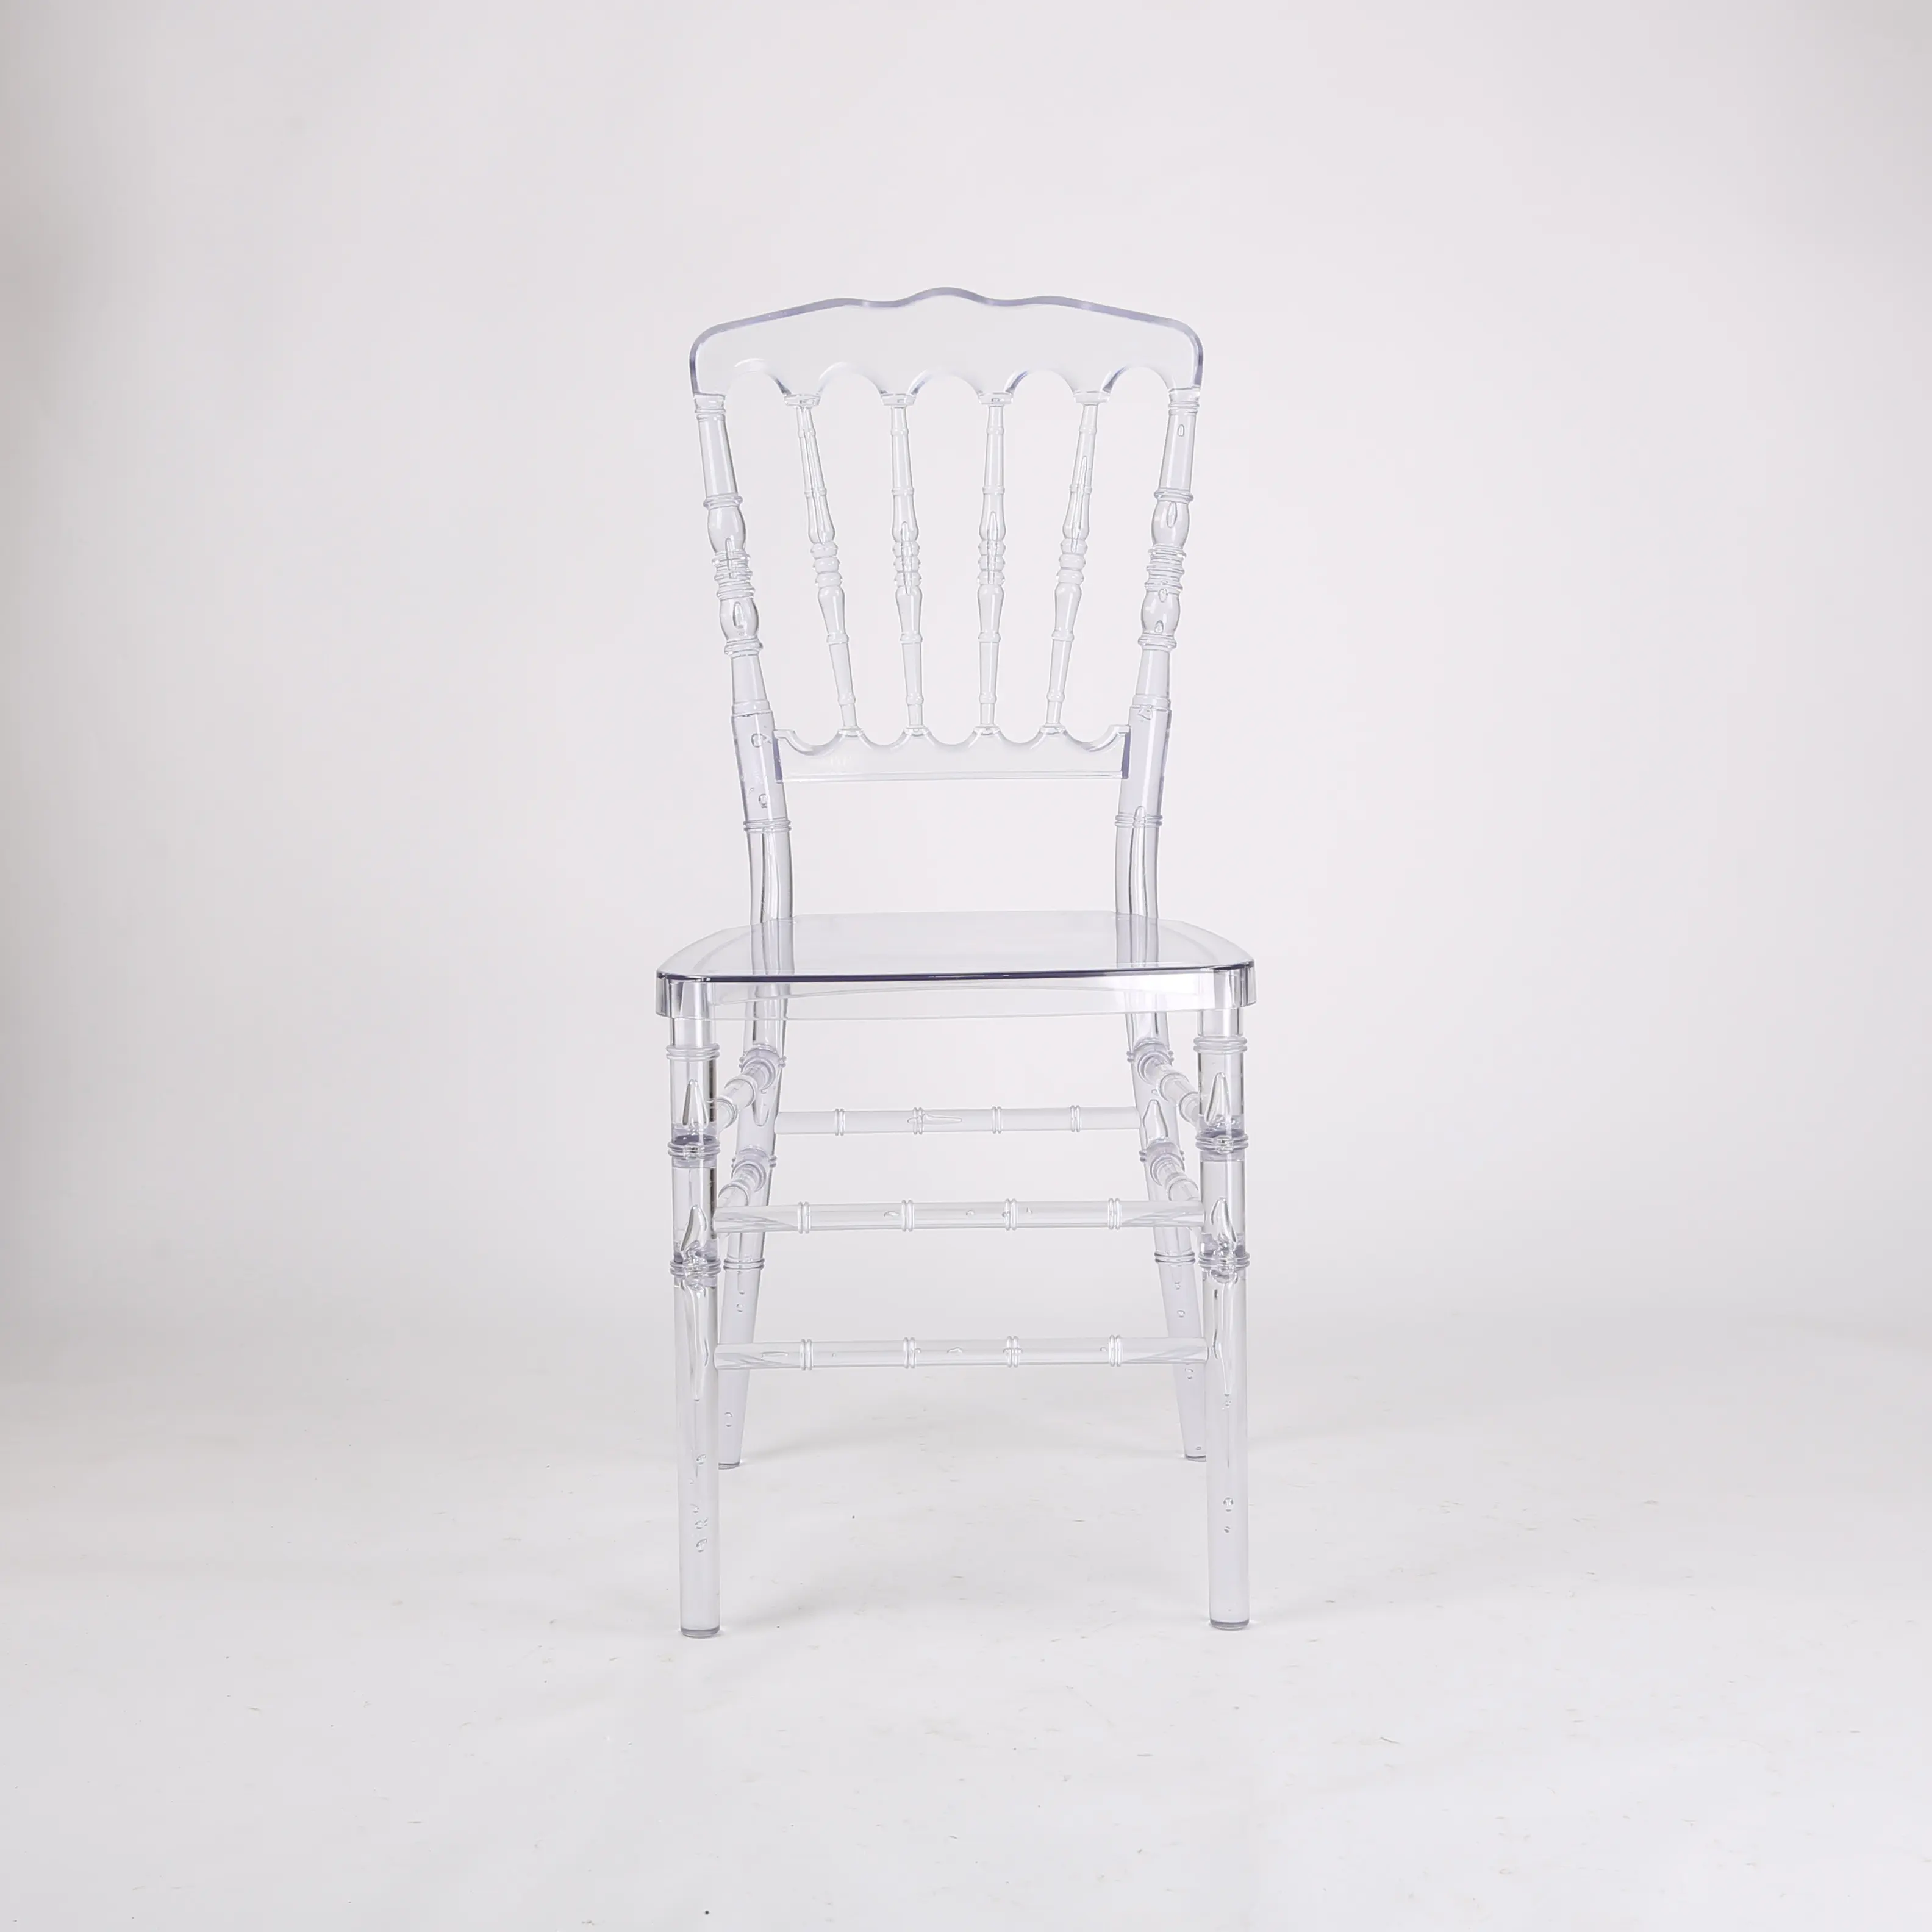 Chaise ronde en plexiglas transparente, en plastique, polycarbonate, acrylique, 1 pièce